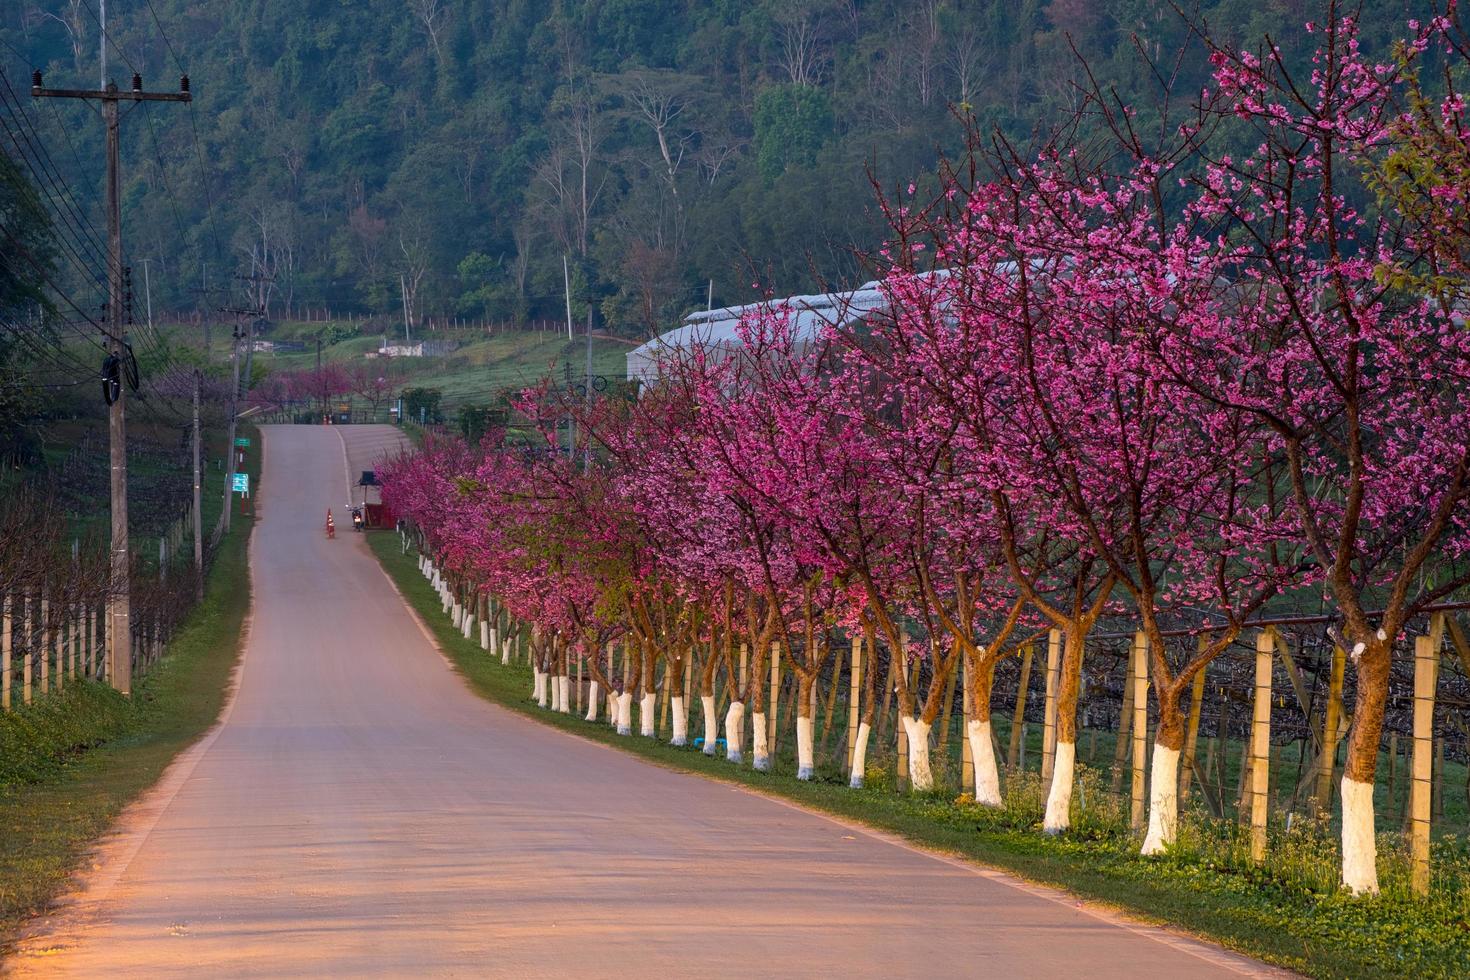 route rose dérivée de la belle de sakura, fleurs de cerisier à doi angkhang station agricole royale de montagne angkhang photo